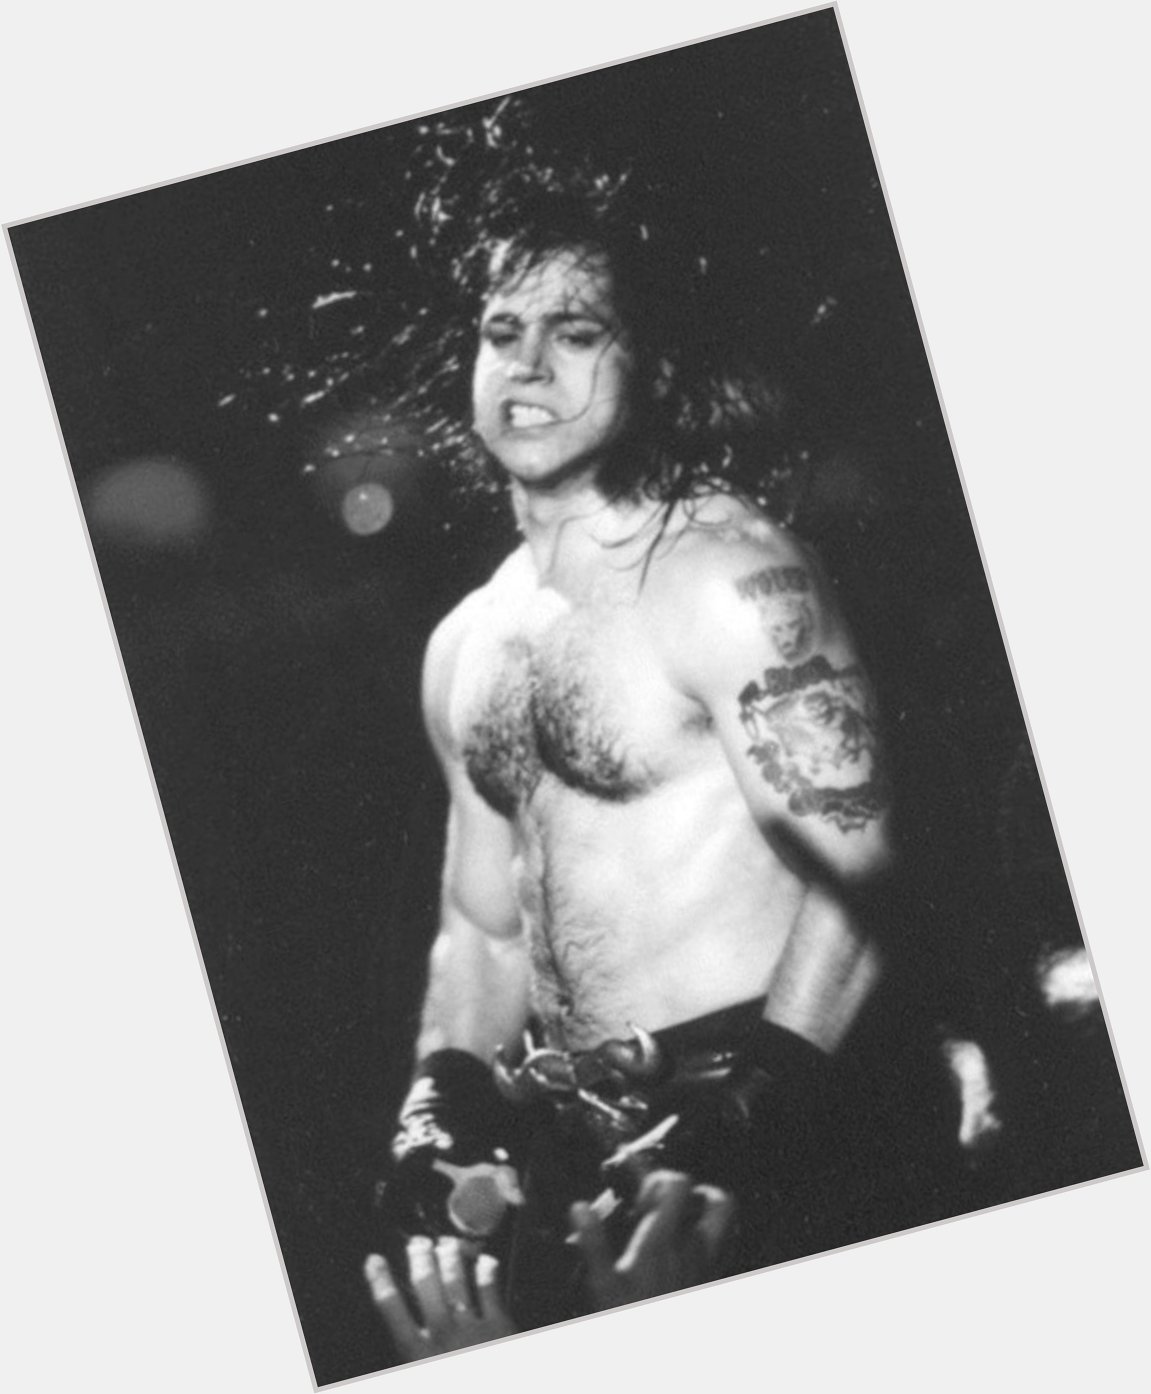 Happy birthday to Glenn Danzig. 